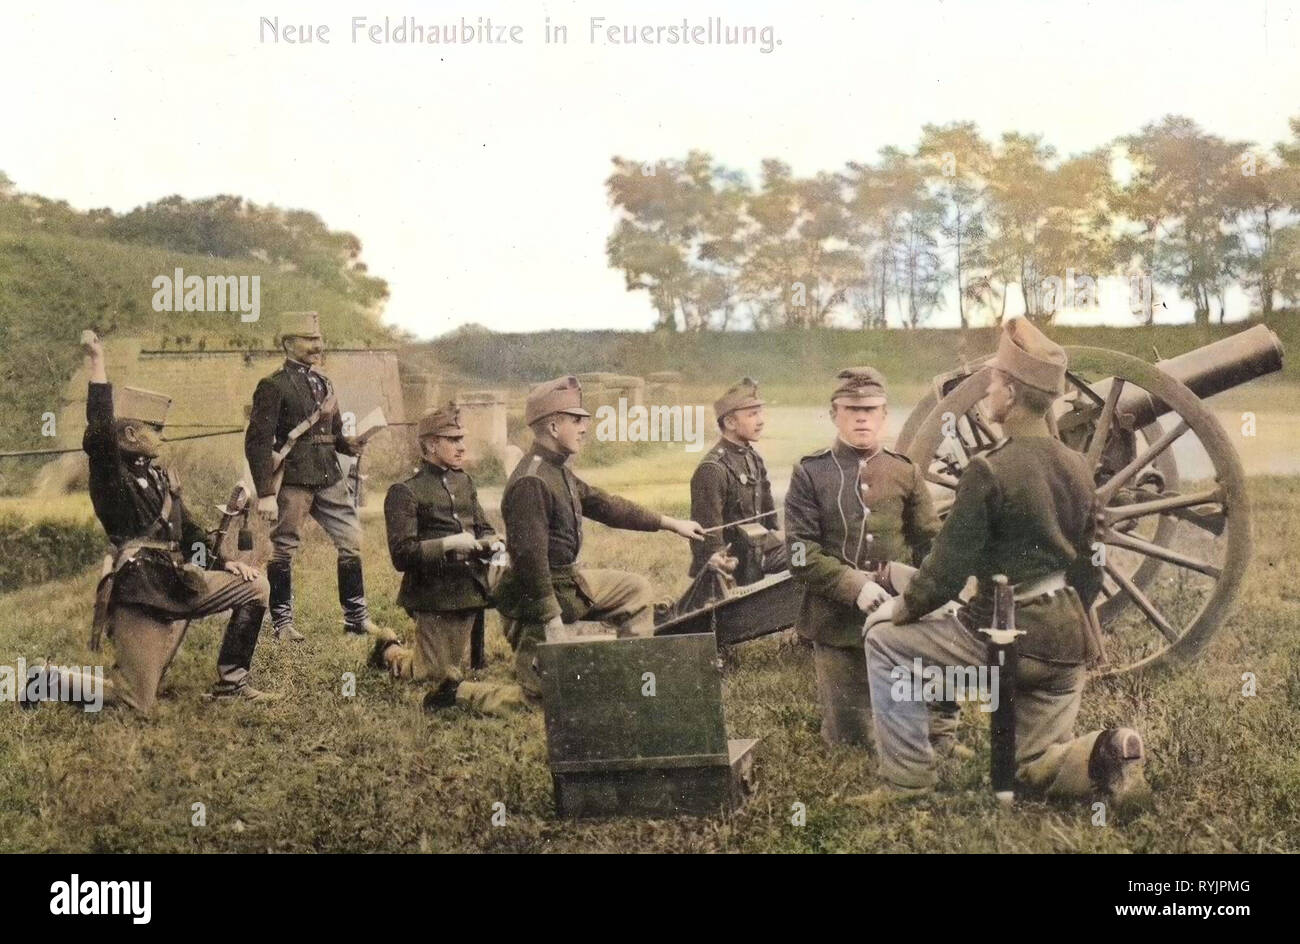 10 cm M. 99 Feldhaubitze, österreichisch-ungarischen Armee, 1910, Aussig, Theresienstadt, neuen Feldhaubitze in Feuerstellung, Tschechische Republik Stockfoto